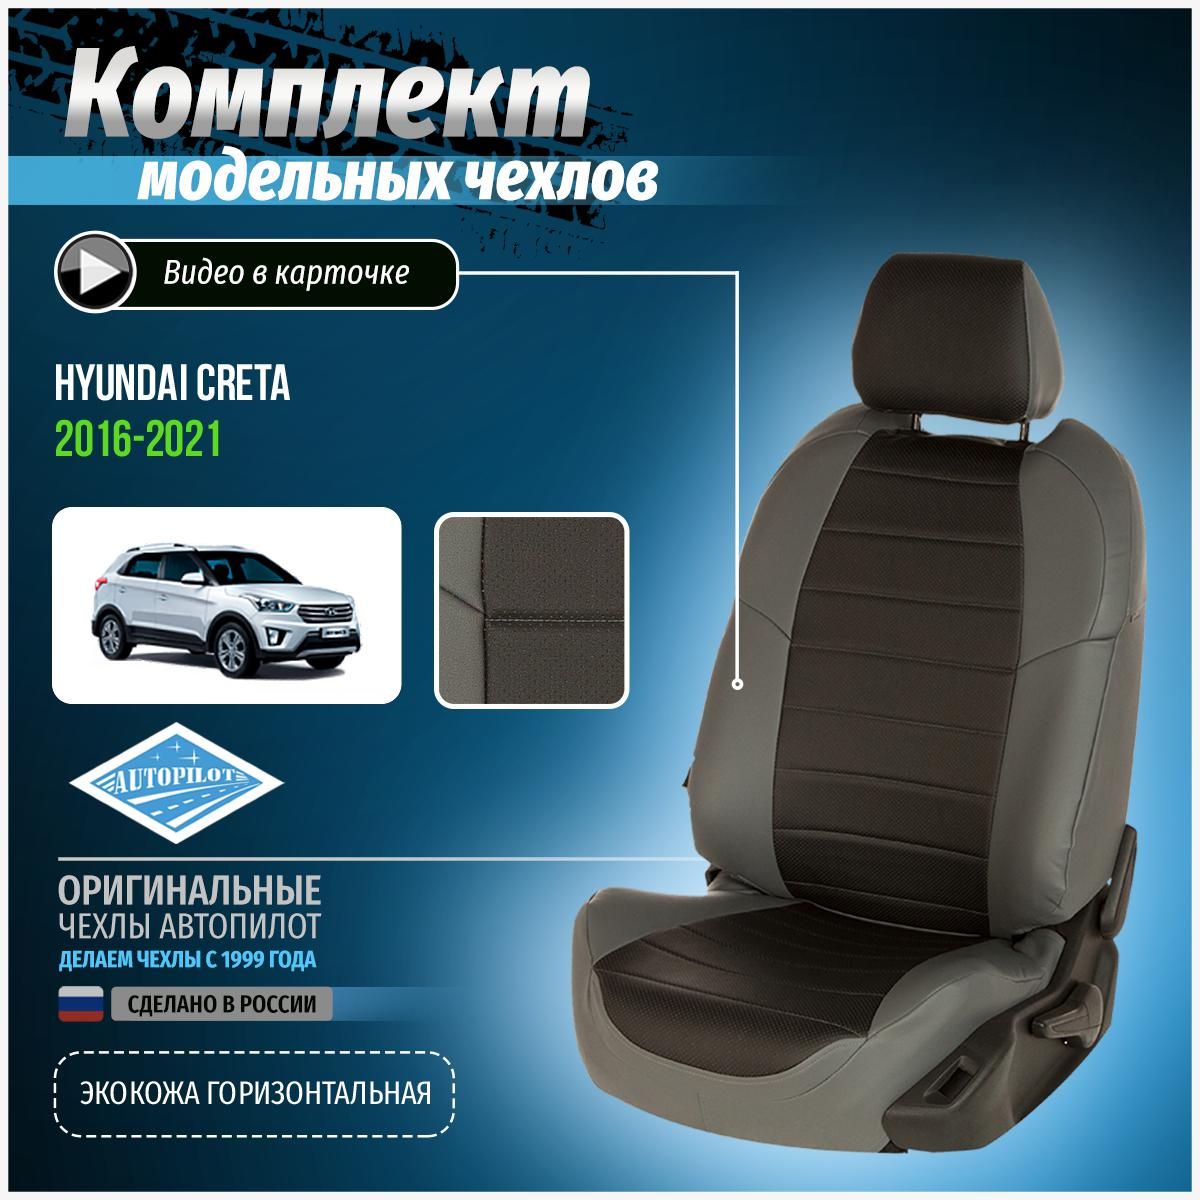 Чехлы на Хендай Крета 2 - купить чехлы на сидения Hyundai Creta II в Краснодаре